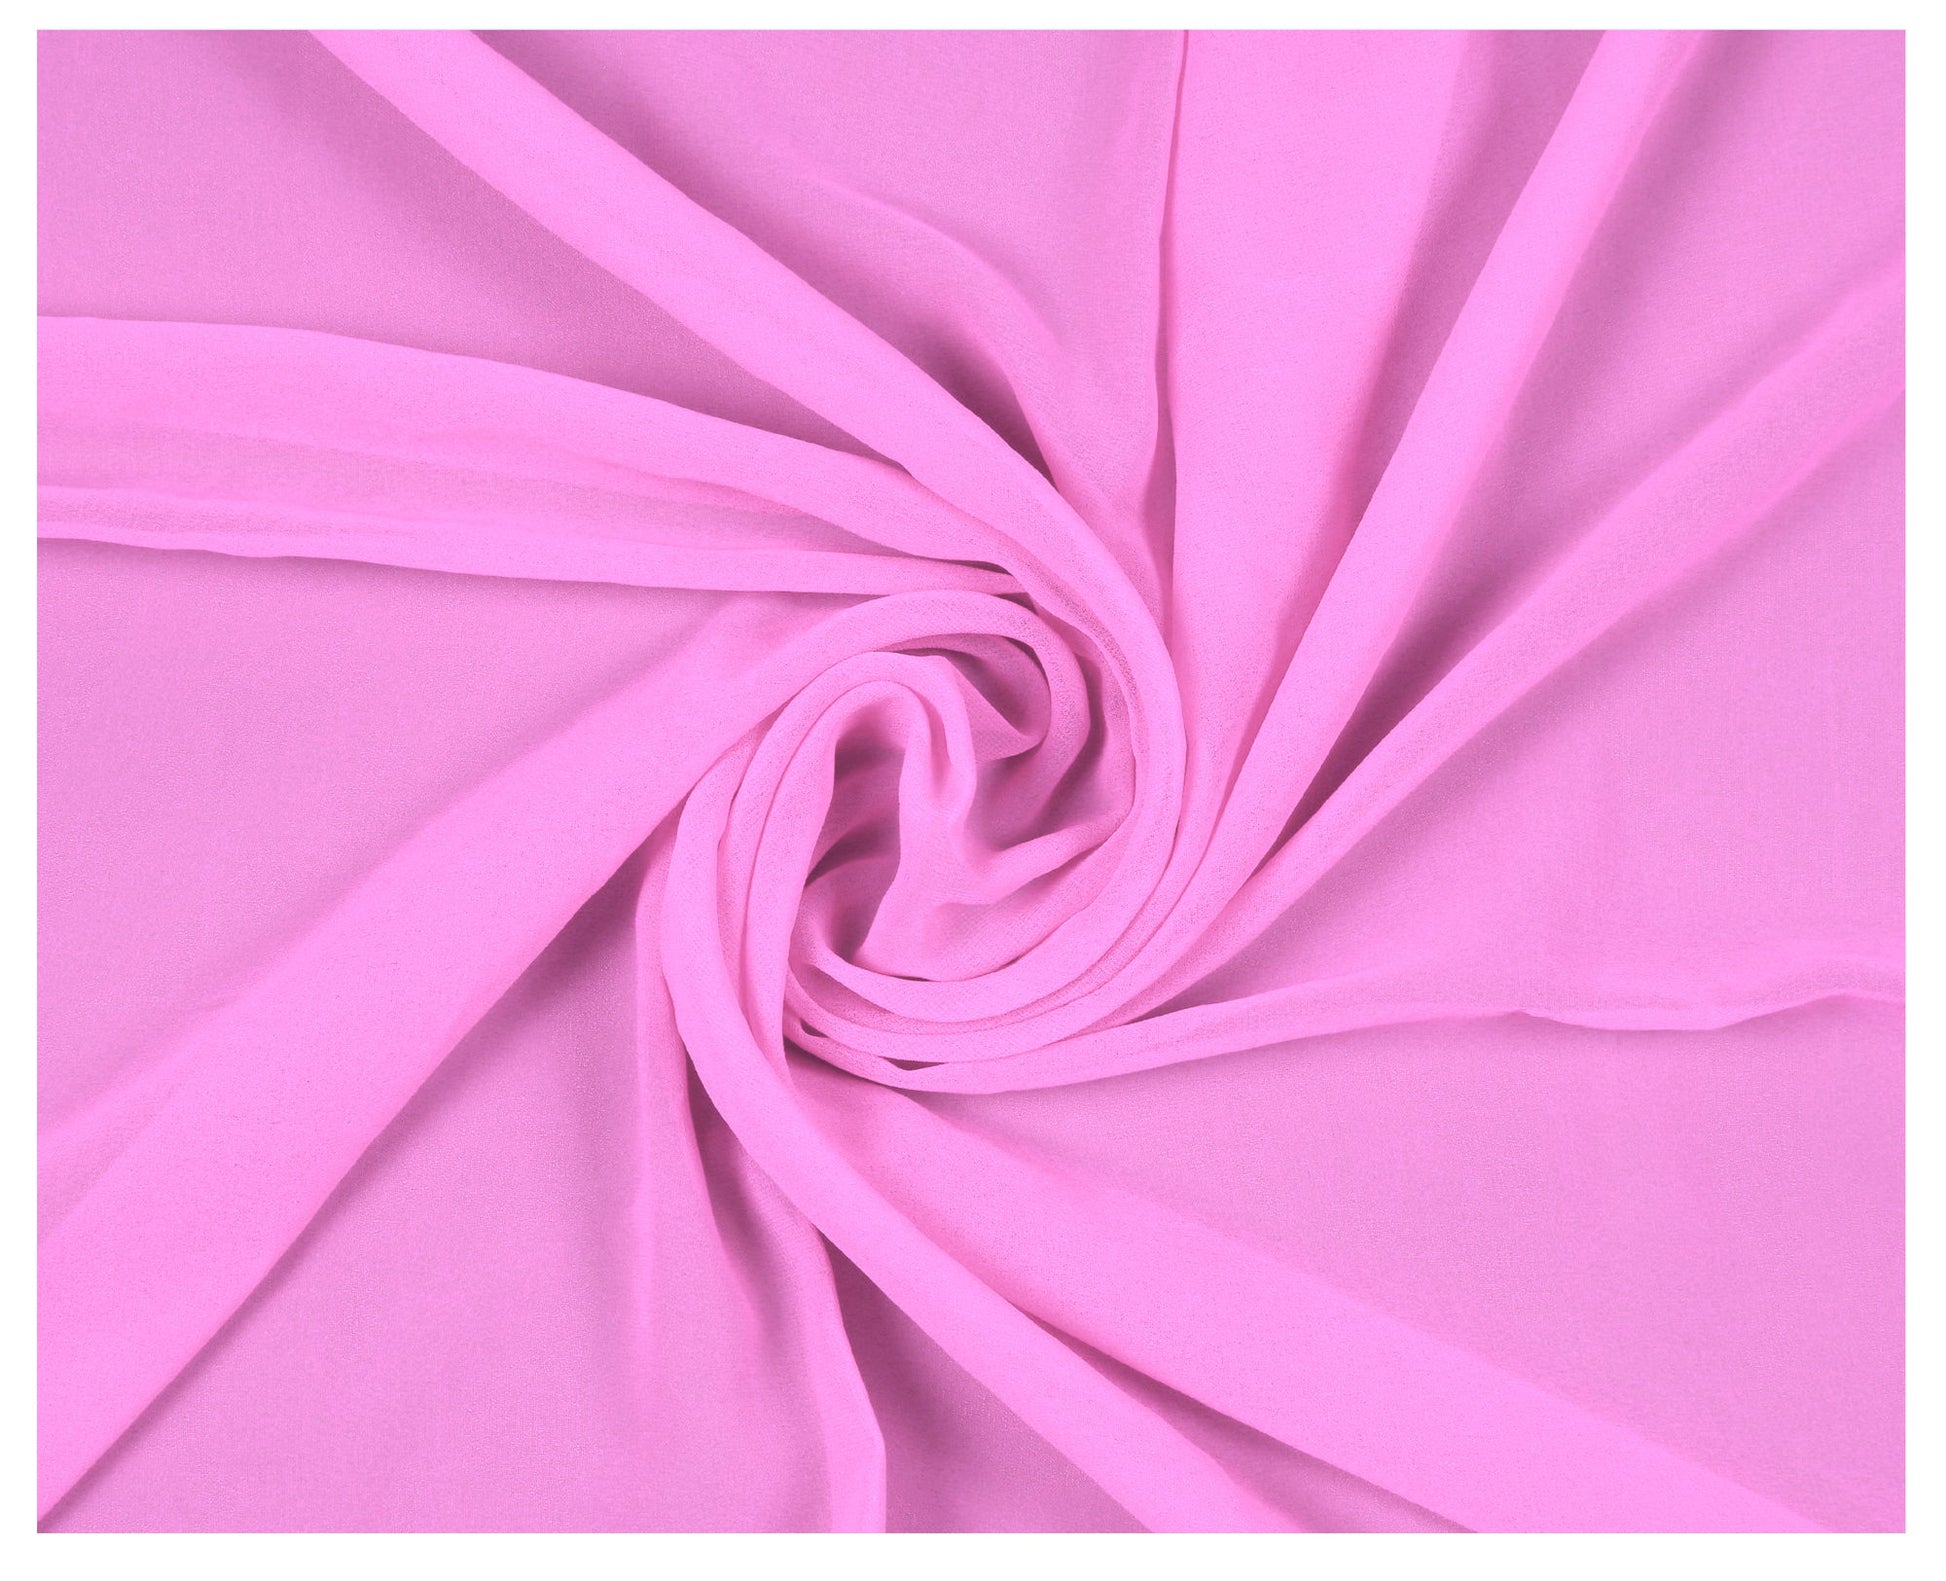 Bubblegum Pink,3a7fb7a3-cae6-4807-83b9-aa0cb6953905